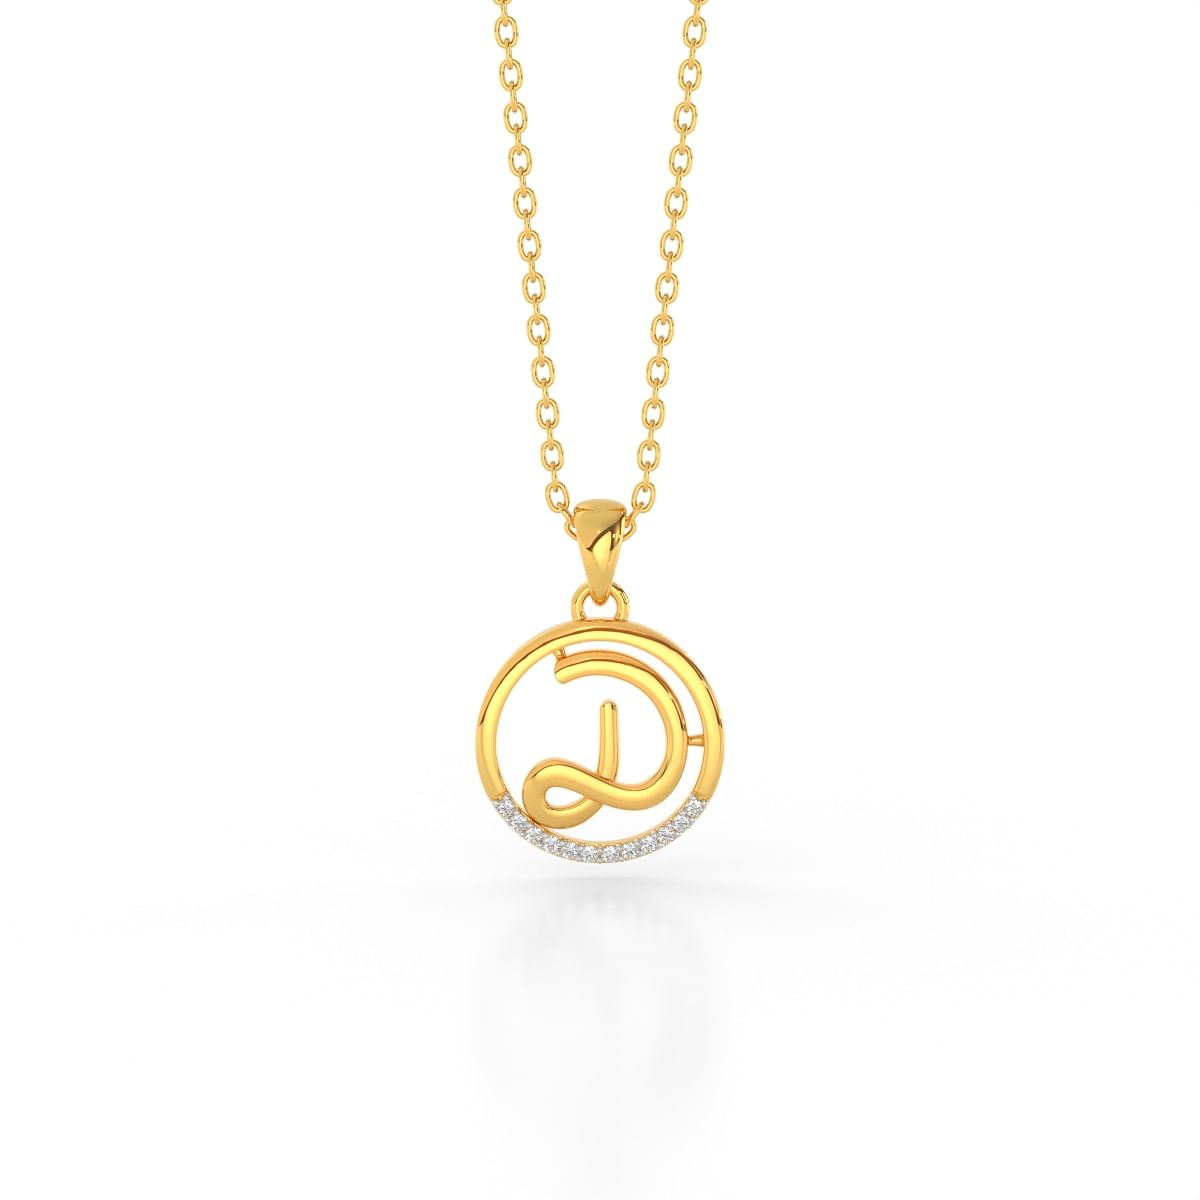 D letter yellow gold diamond pendant for women